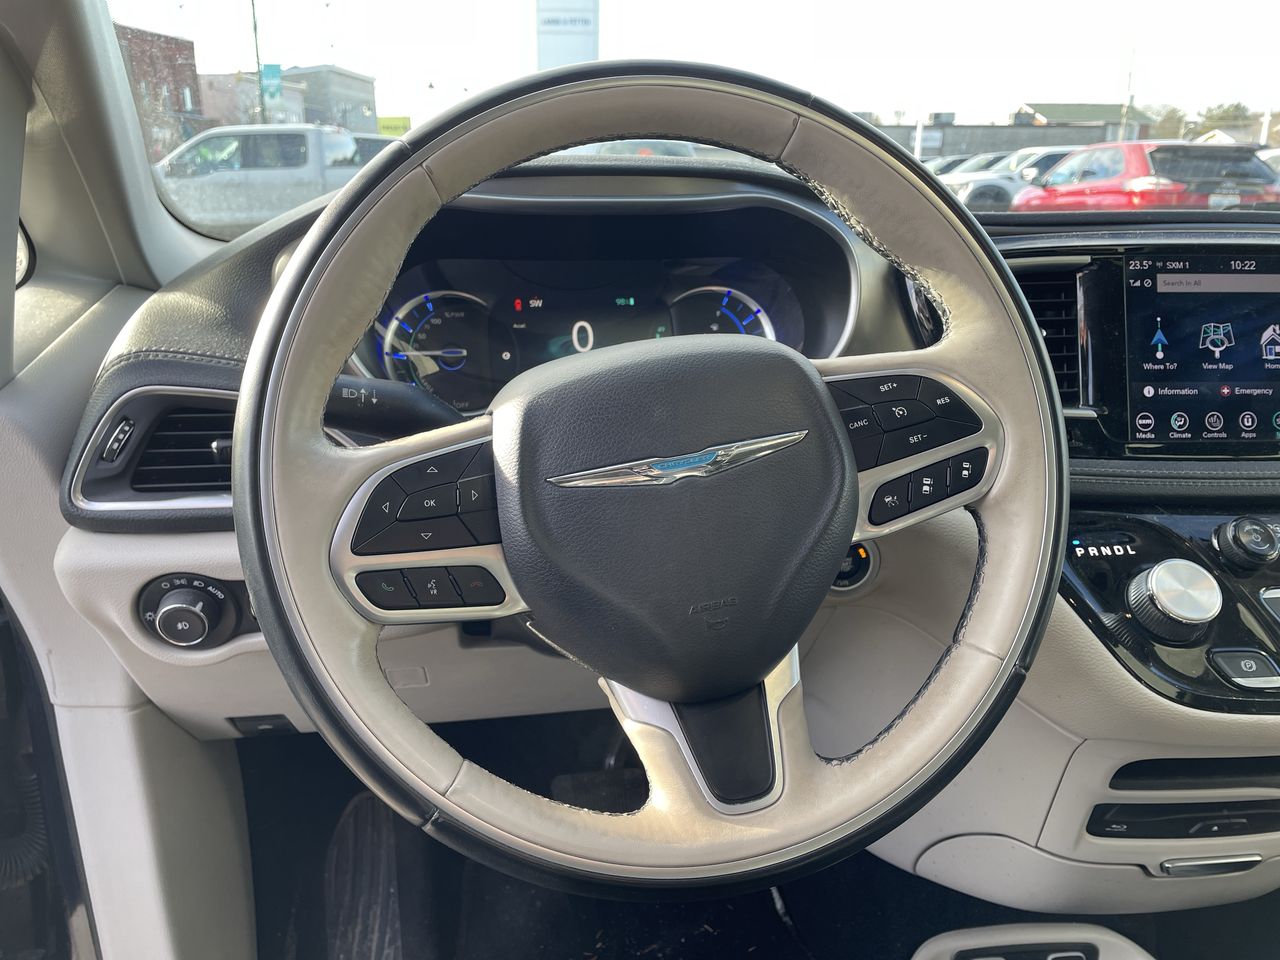 2018 Chrysler Pacifica Hybrid - P21595 Full Image 14